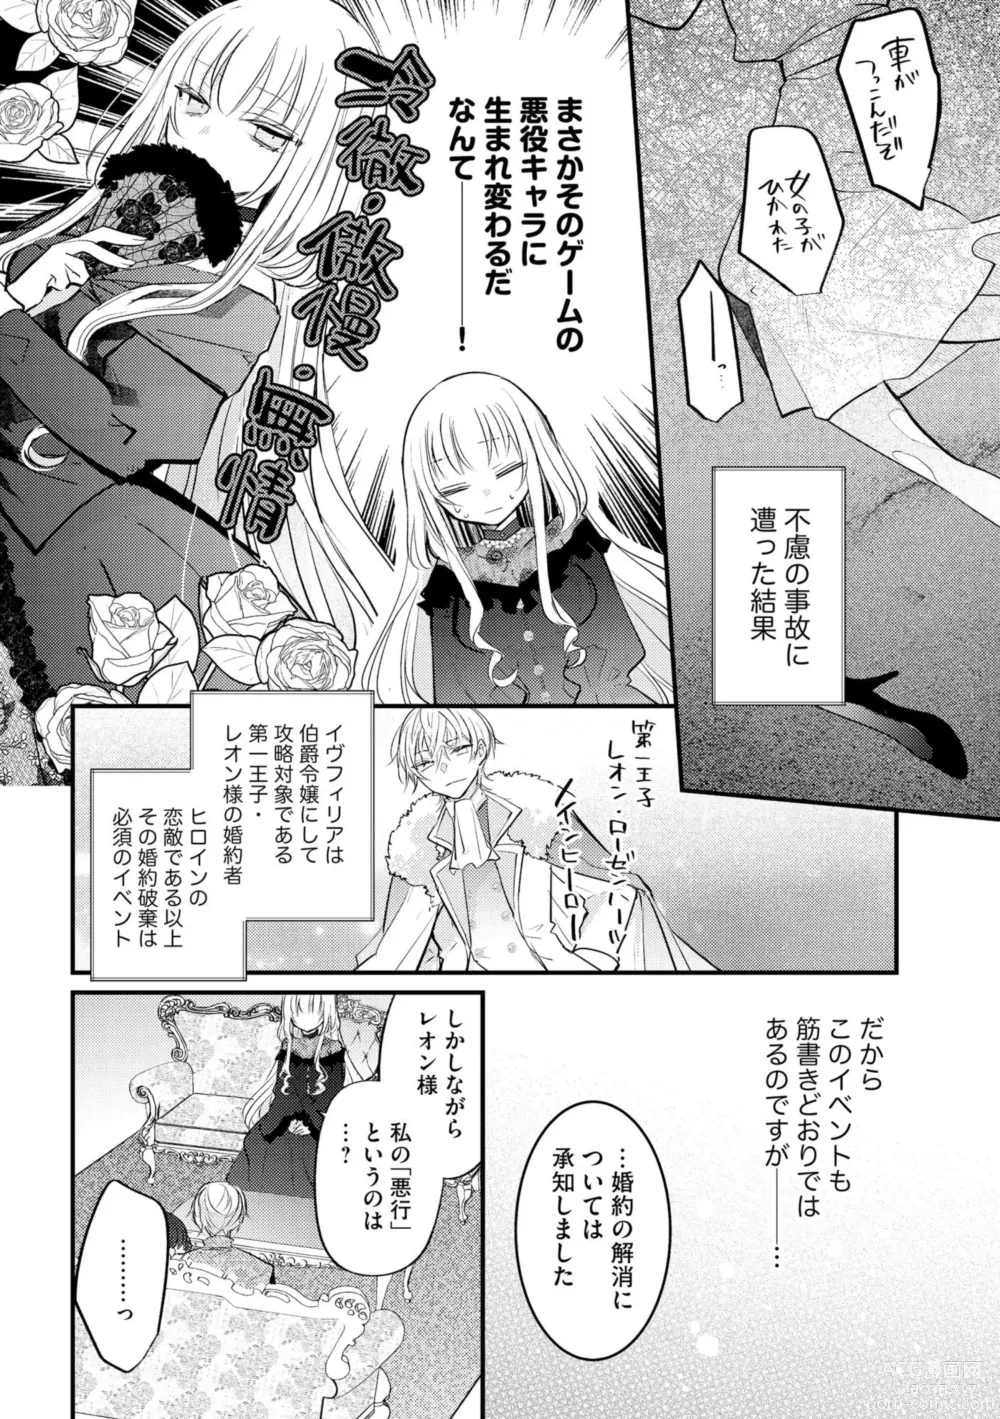 Page 8 of manga Akuyaku Reijou to Kyuuketsu Ouji no Dekiai Keiyaku Bad End ￫ Kenzoku Route no Amai Yotogi 1